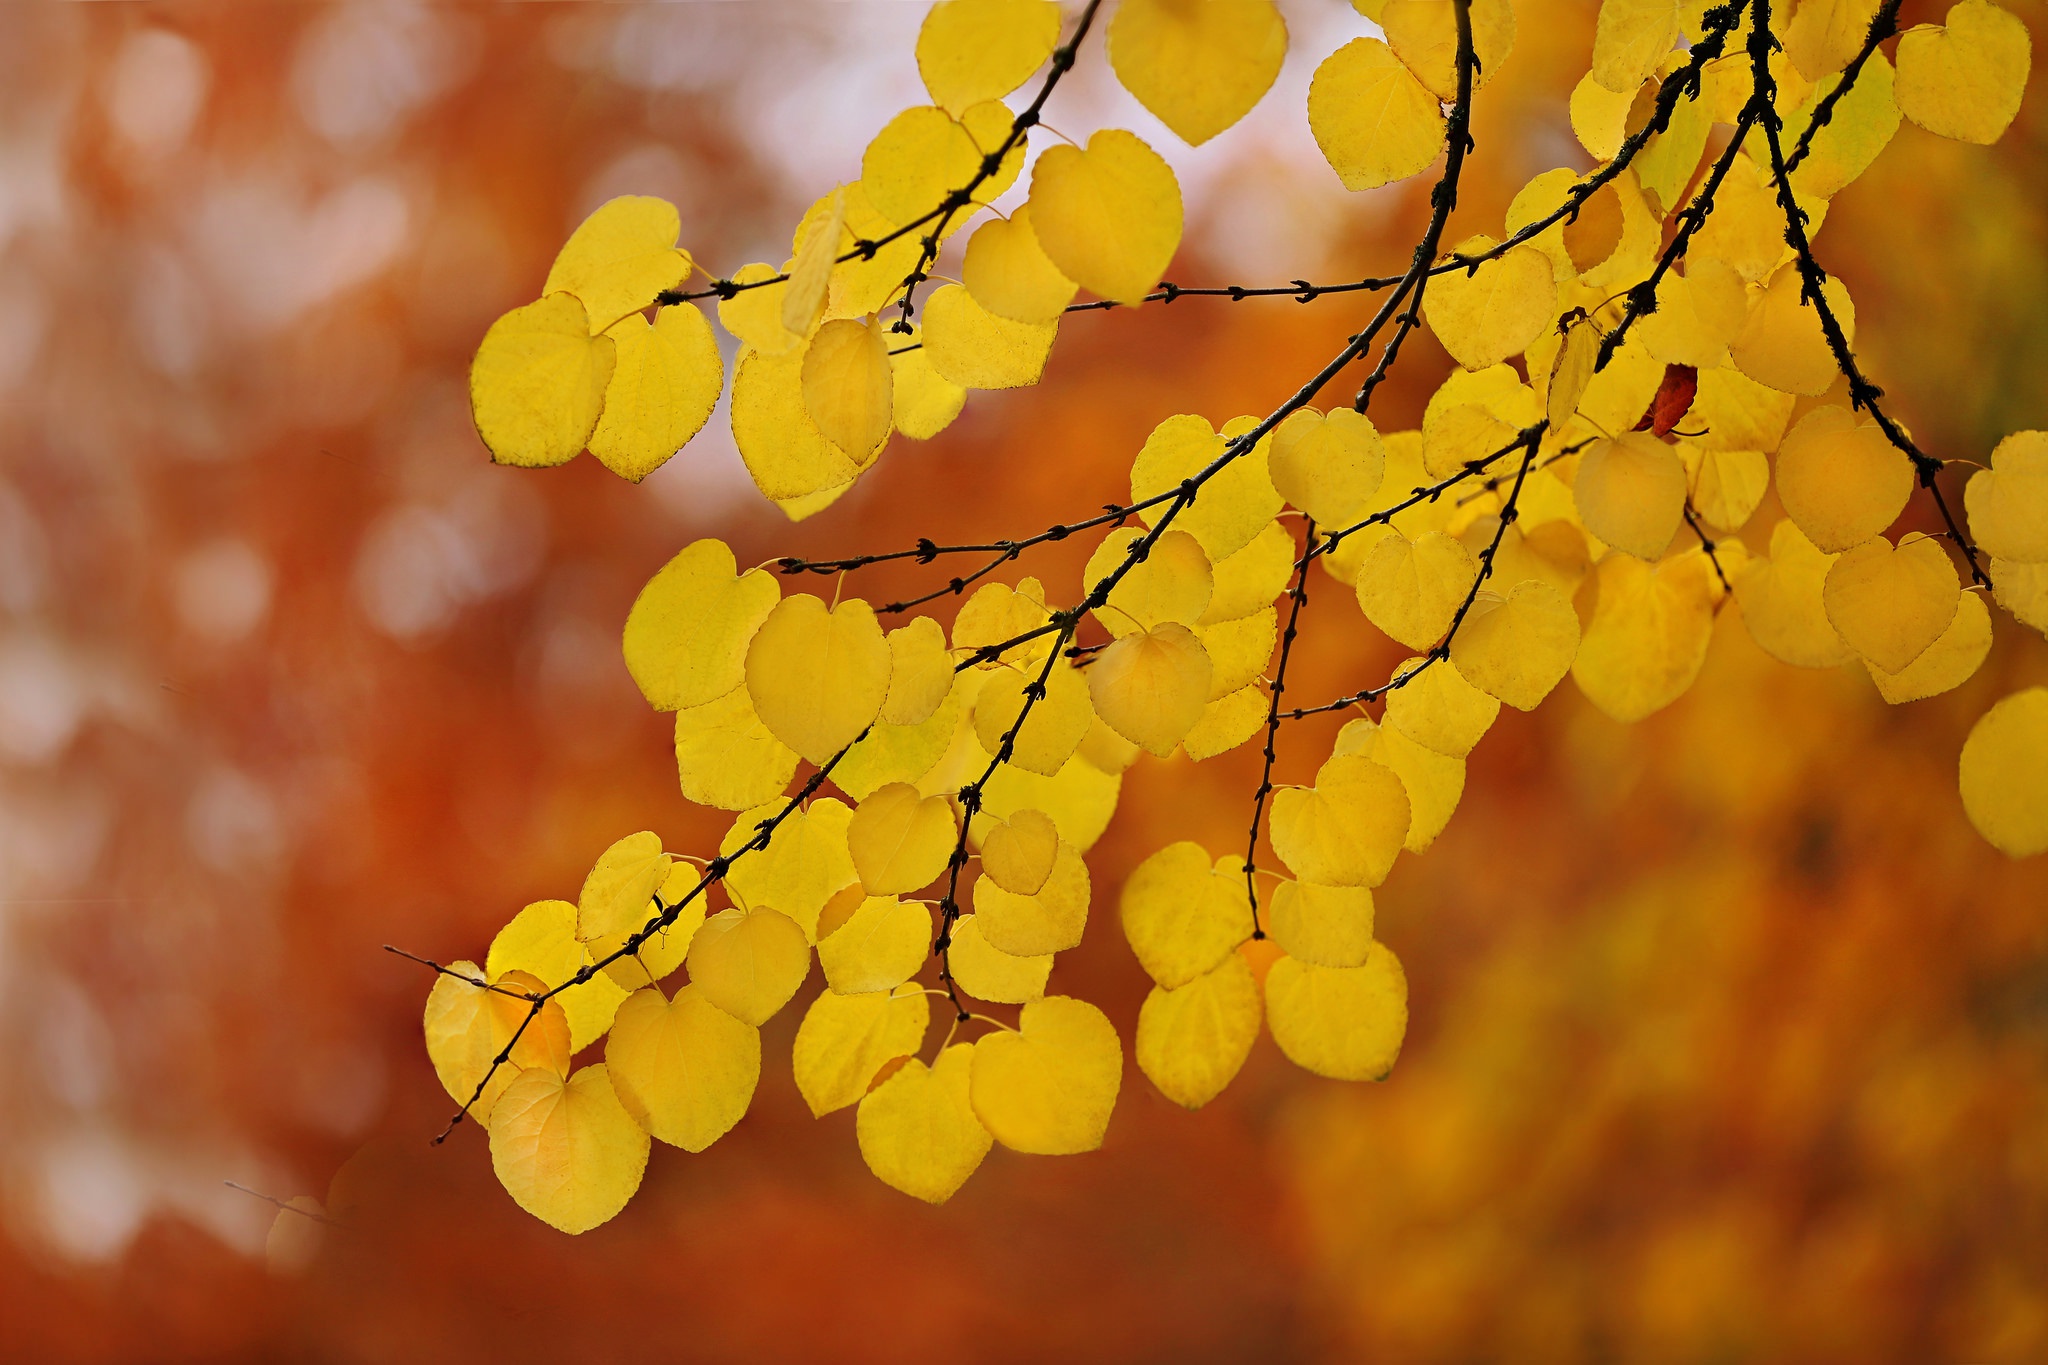 Скачать обои бесплатно Природа, Осень, Лист, Ветка, Боке, Земля/природа картинка на рабочий стол ПК